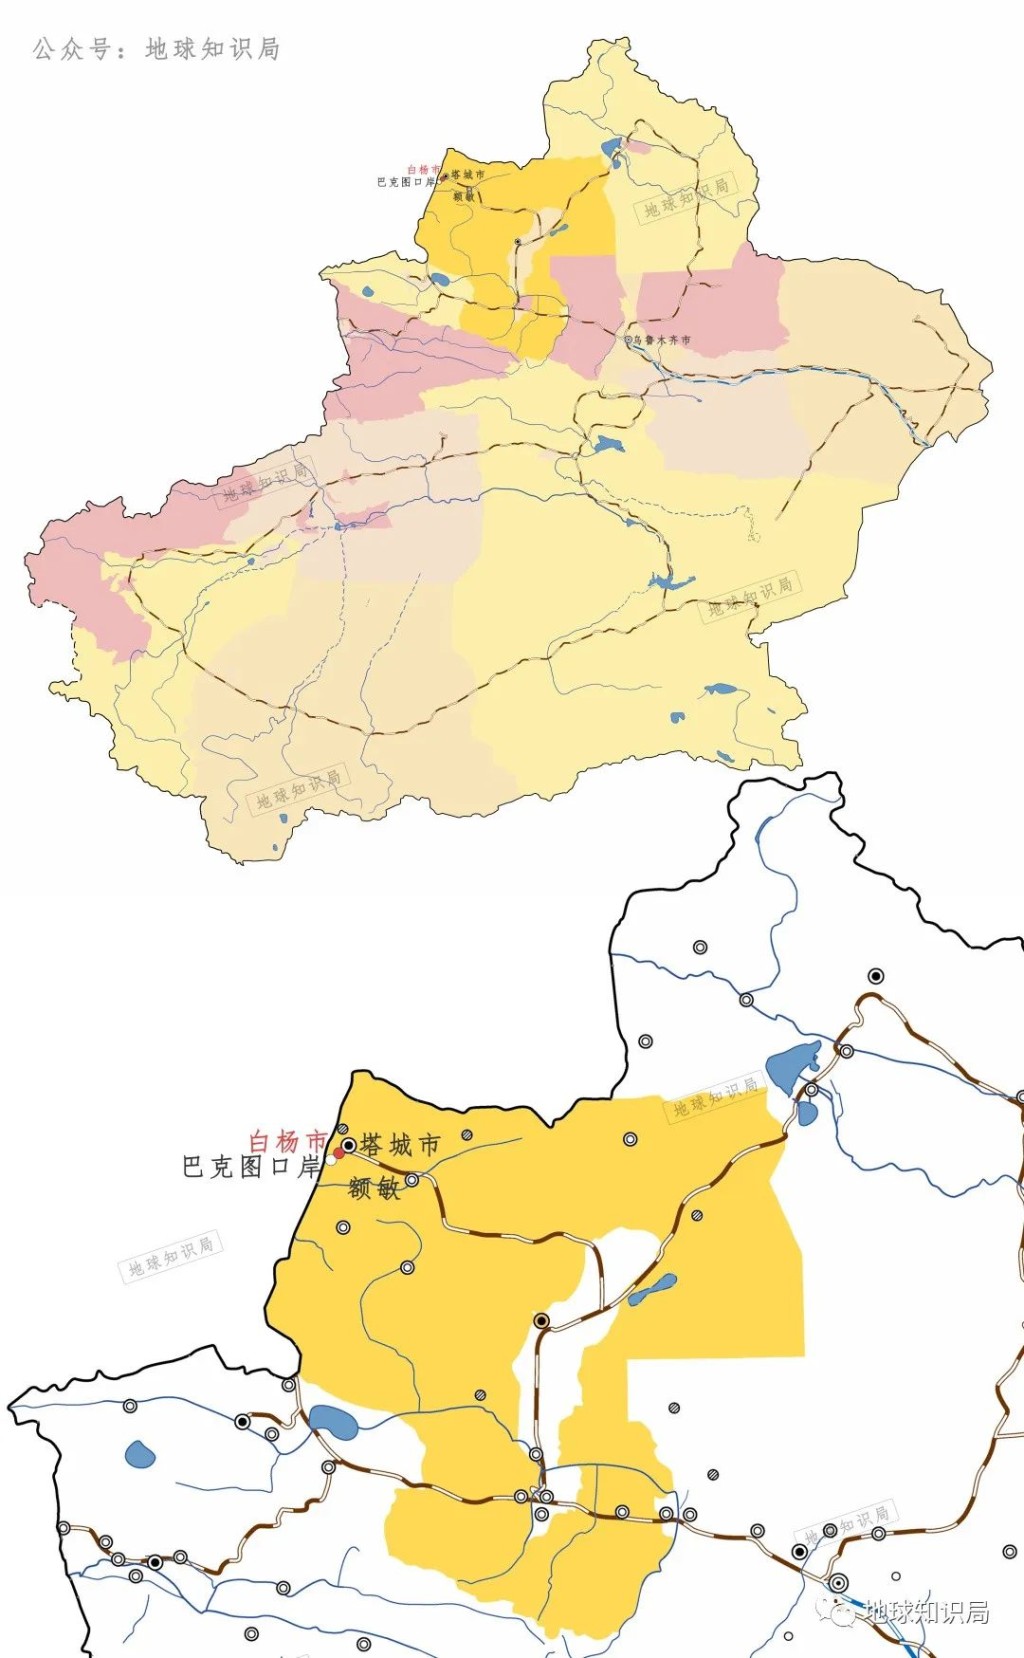 白杨市位于中哈边境。